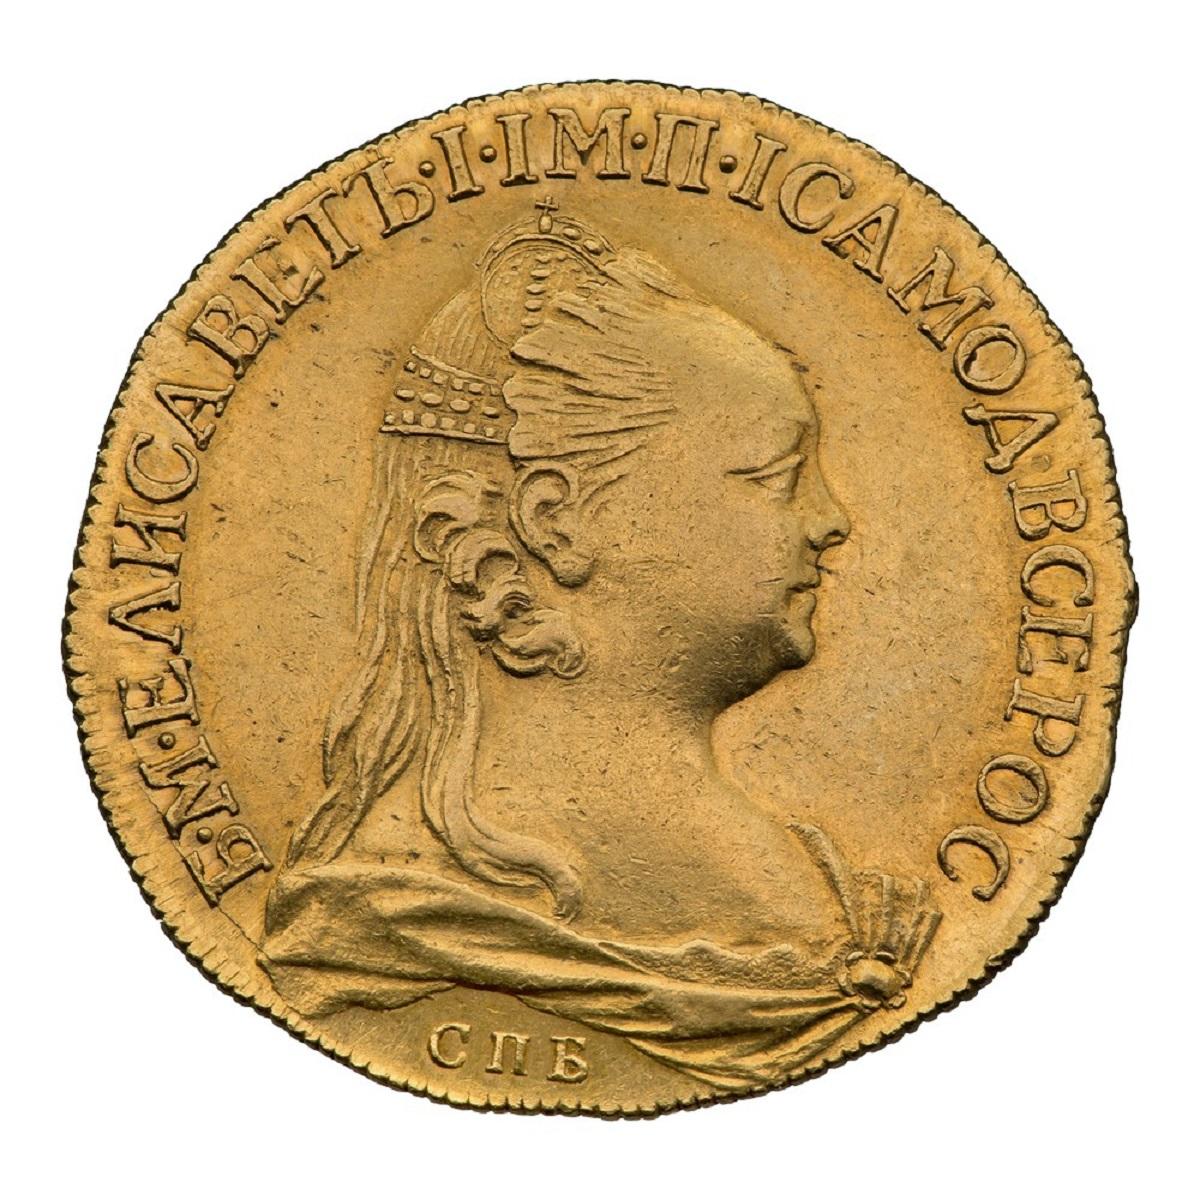 Профиль Елизаветы Петровны на монетах